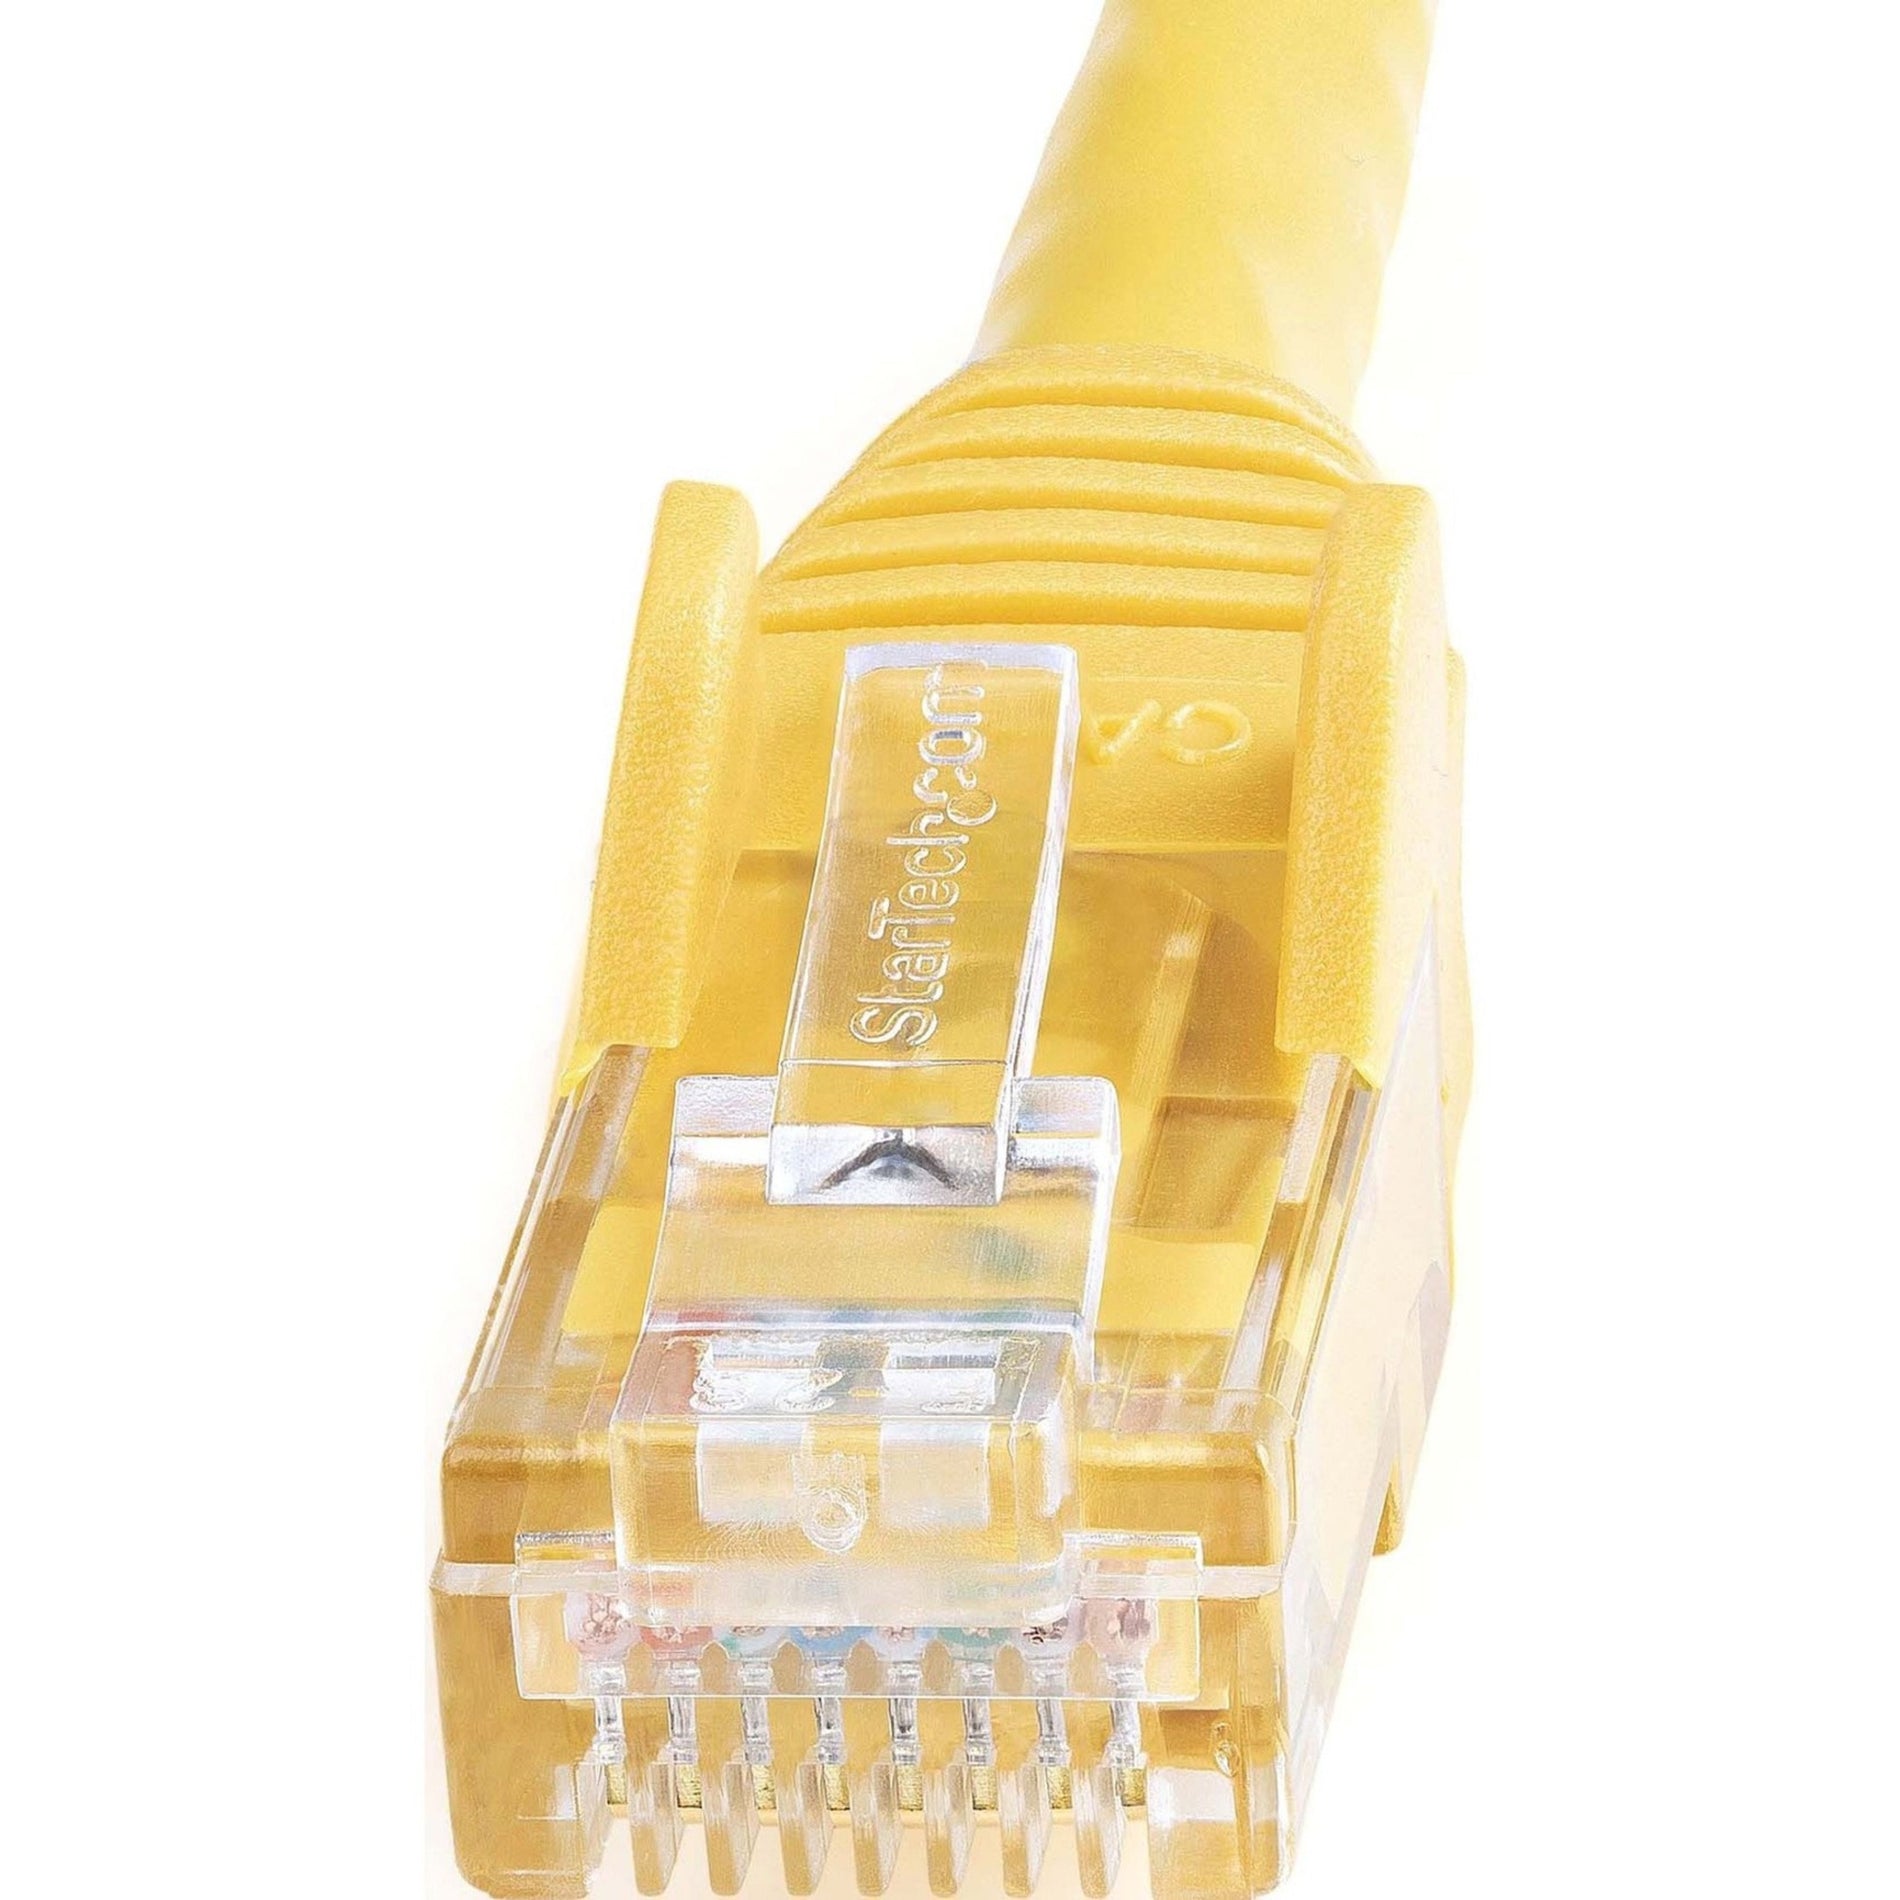 品牌名称：星英科技 类别：网线 颜色：黄色 长度：9 英尺 连接器类型：RJ45 特点：防夹连接器